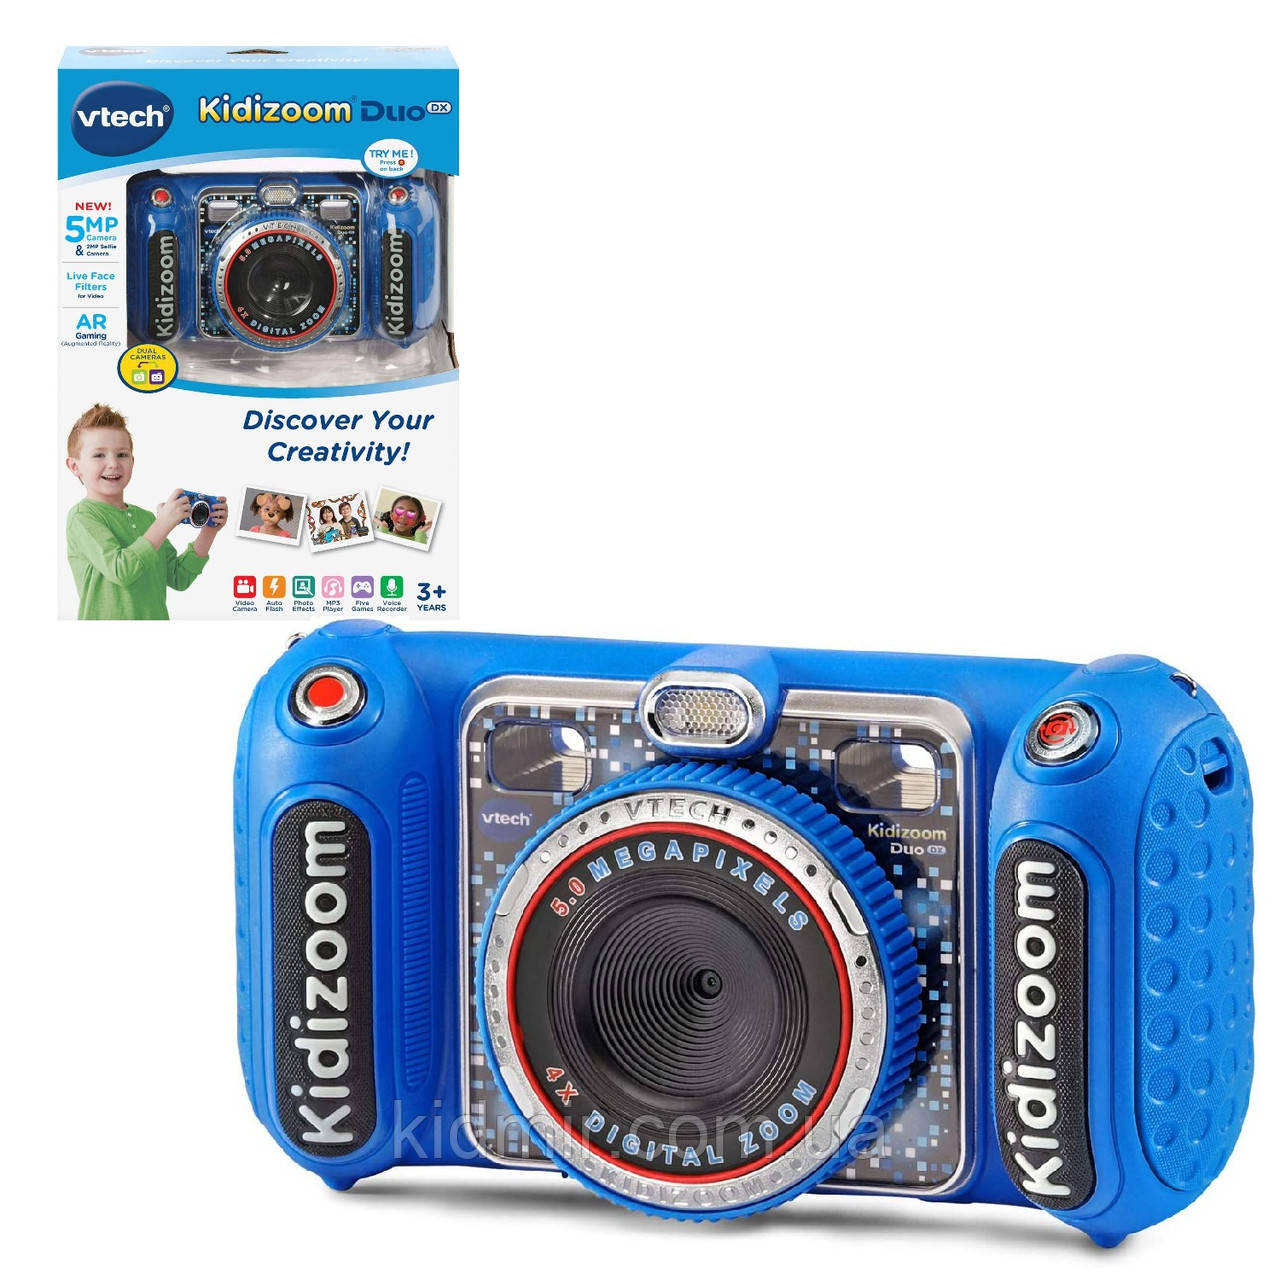 Vtech Kidizoom Camera DUO DX Digital Дитячий фотоапарат із відео записом синій